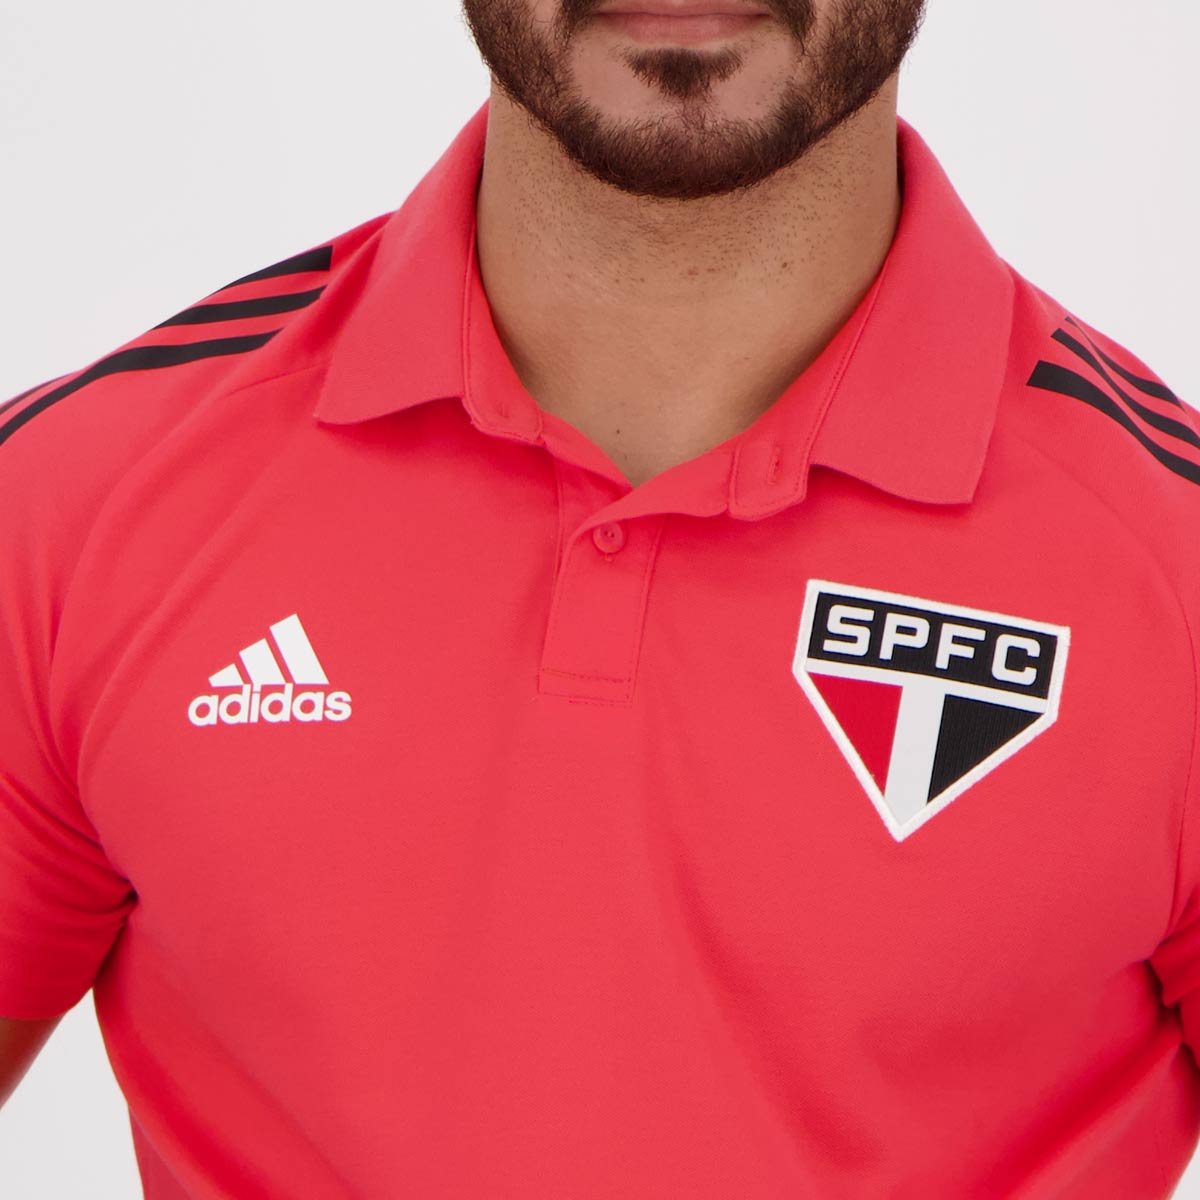 Adidas São Paulo Polo Shirt - FutFanatics